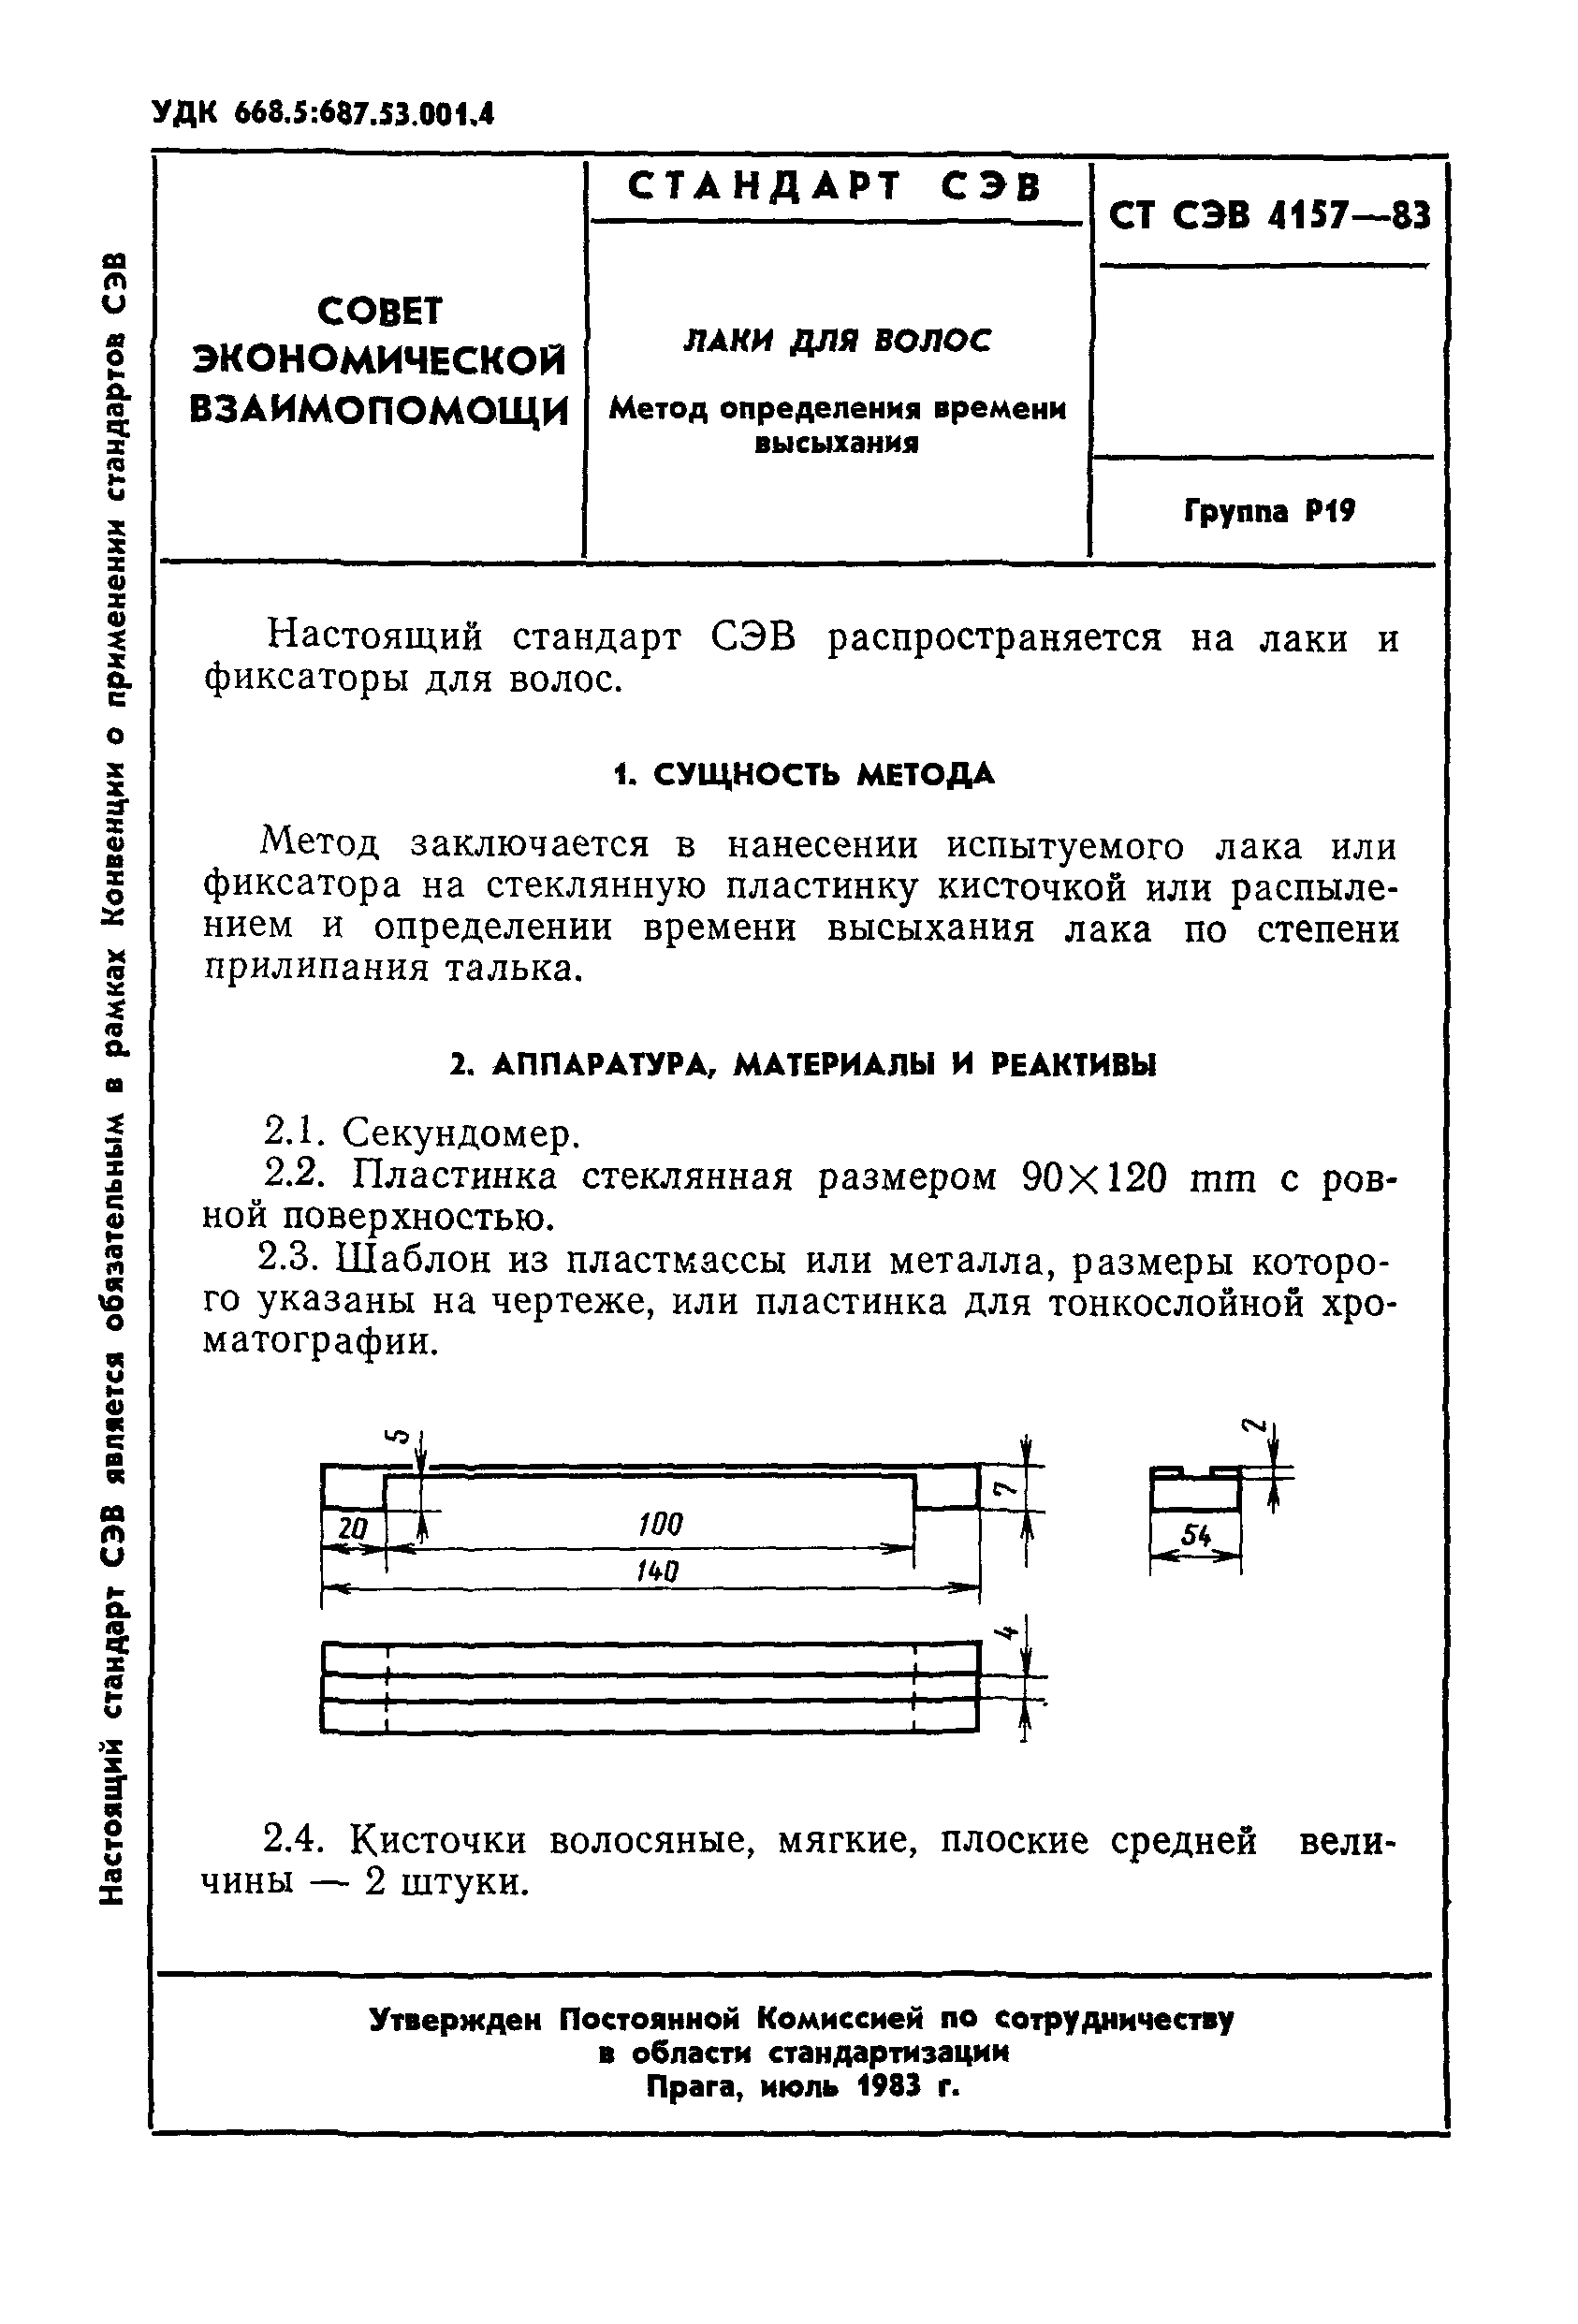 СТ СЭВ 4157-83